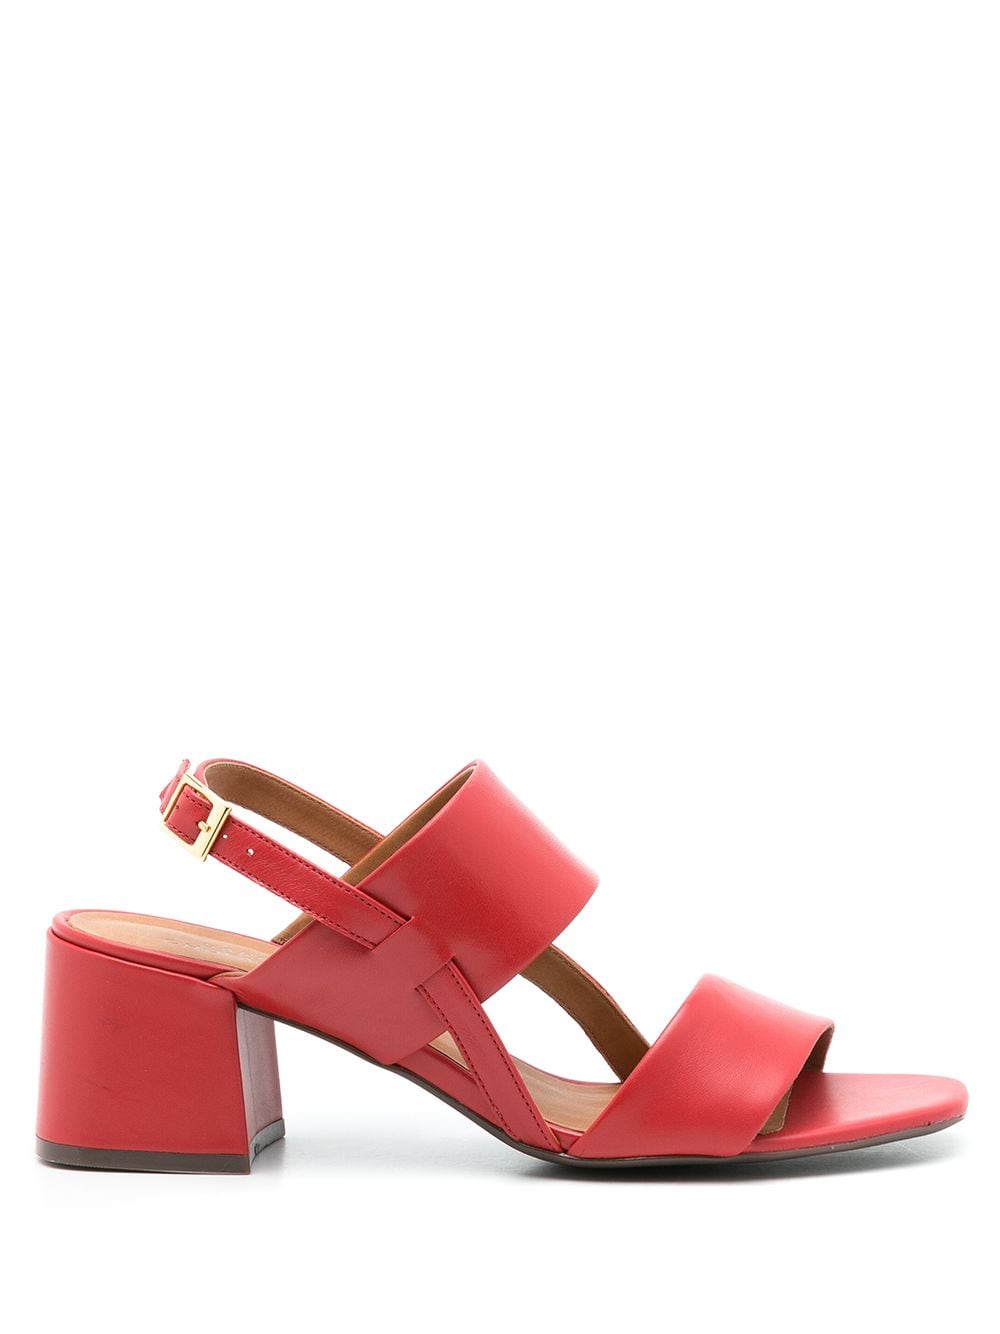 Sarah Chofakian Laura 65mm leather sandals - Red von Sarah Chofakian